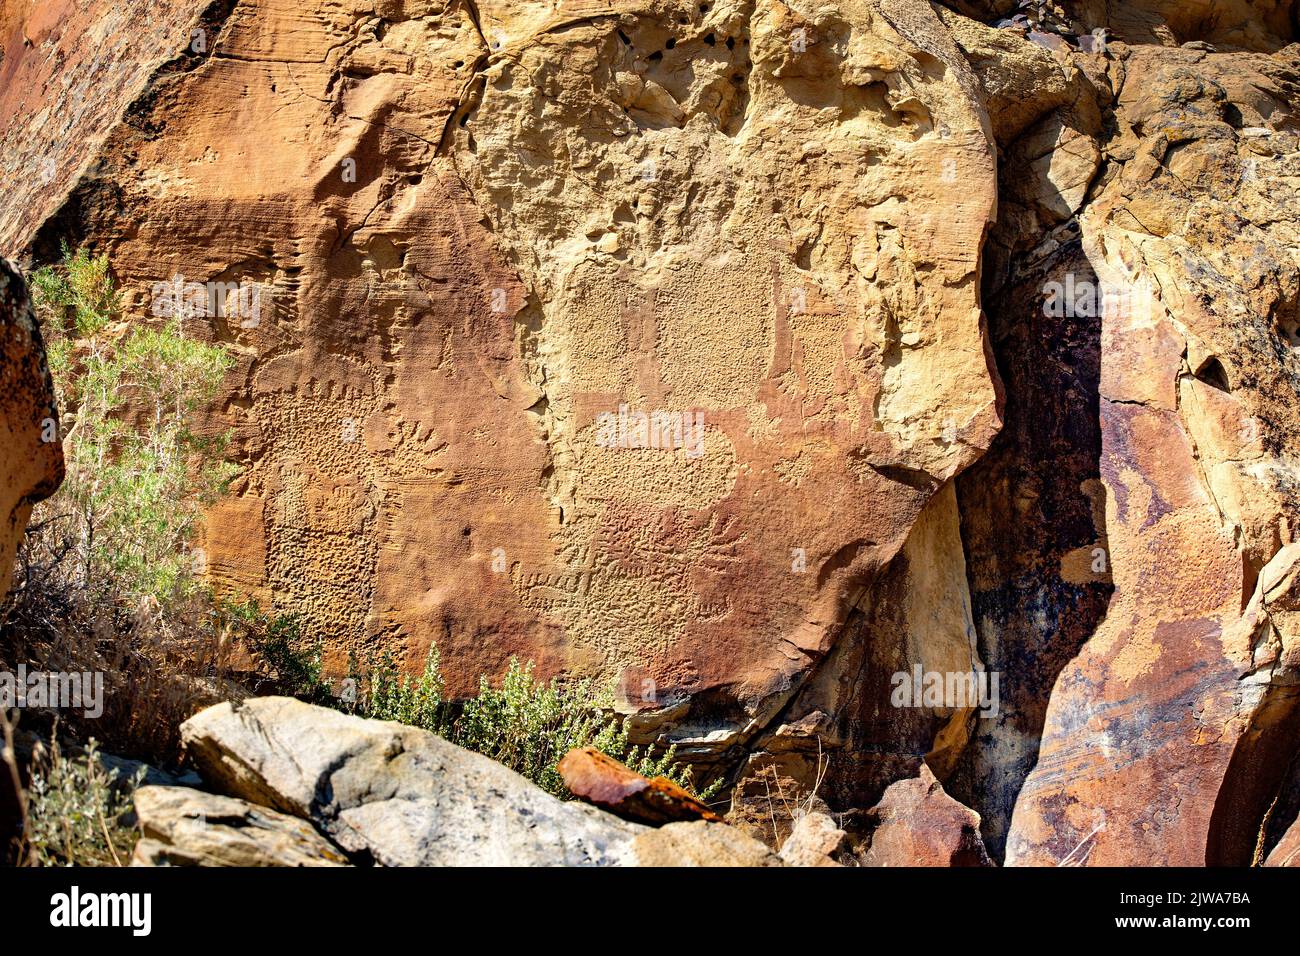 Petroglifos arte rupestre en Legend Rock State Archaeological Site, Wyoming - varios esbozados en toto con piquetes antropomórficos y zoomórficos Foto de stock